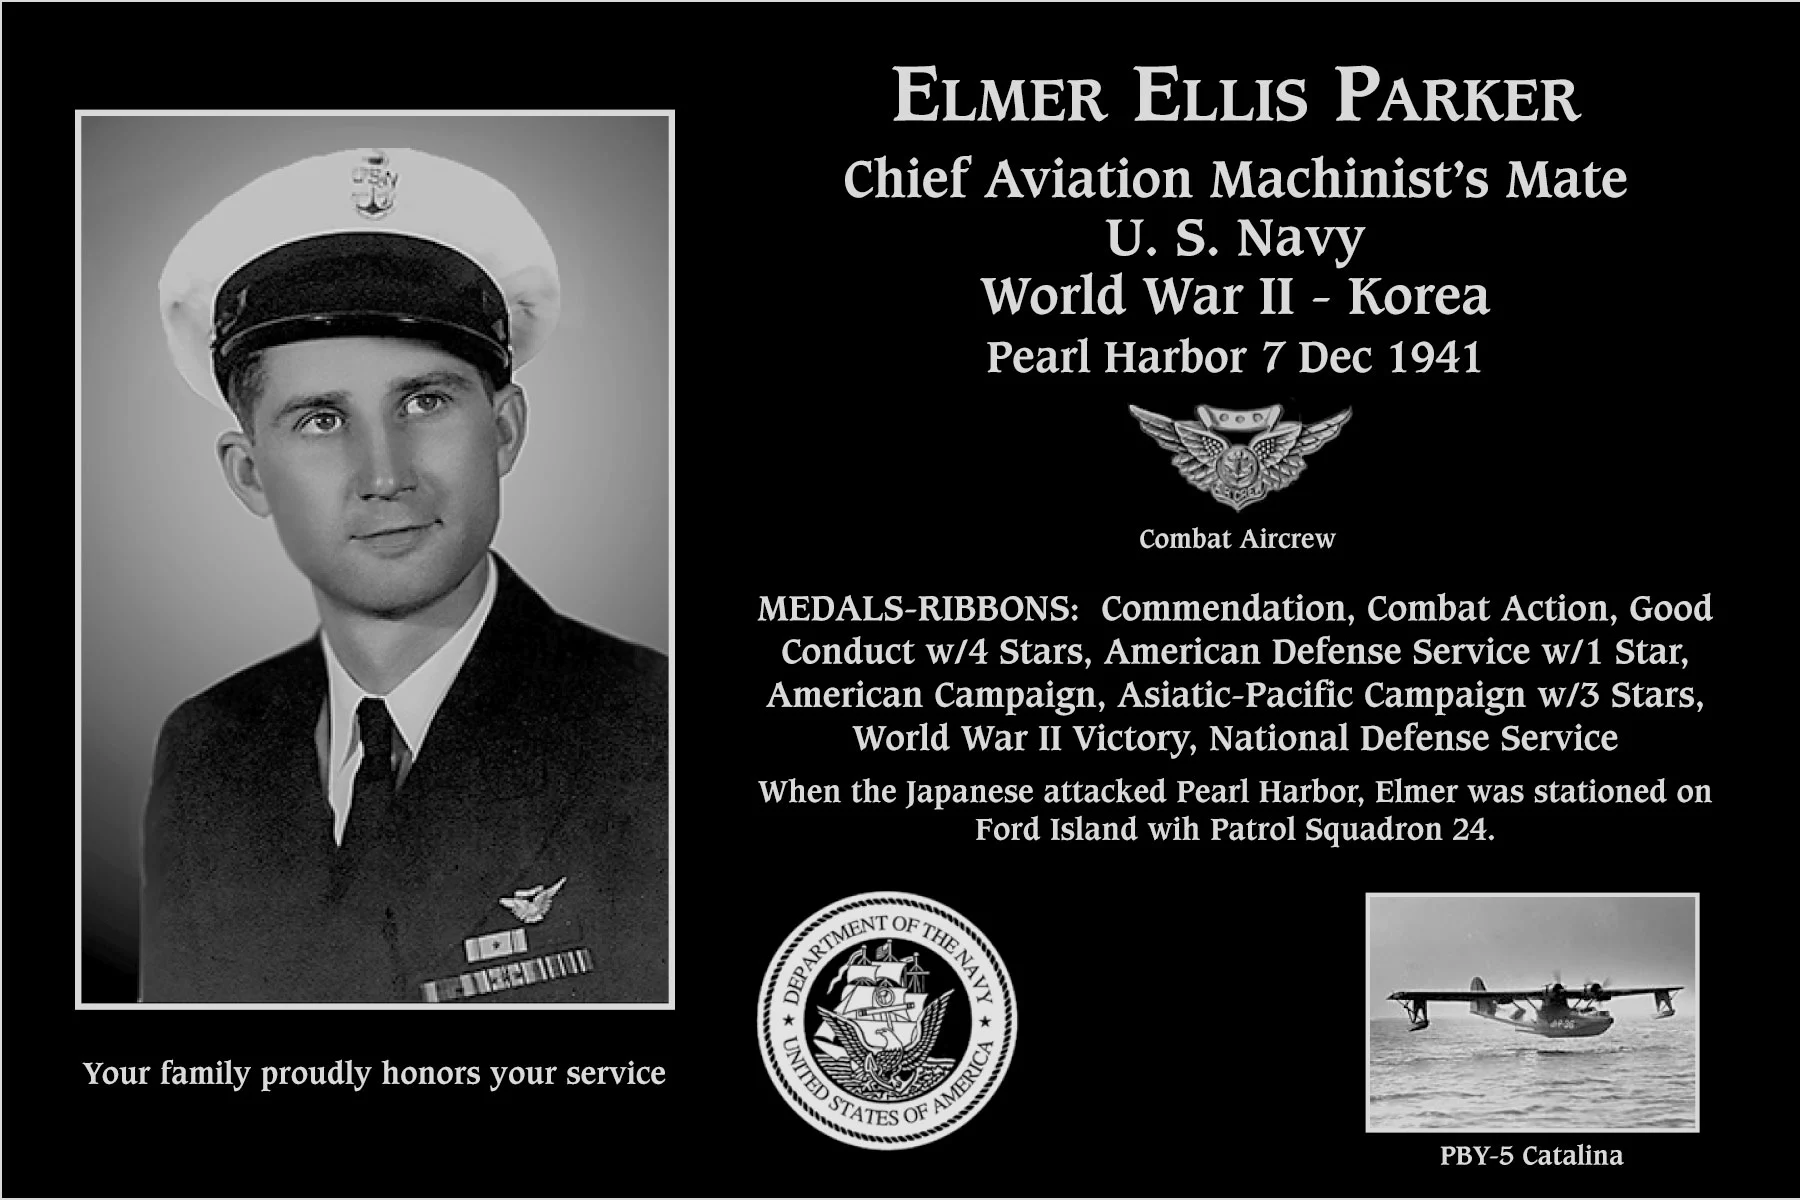 Elmer Ellis Parker